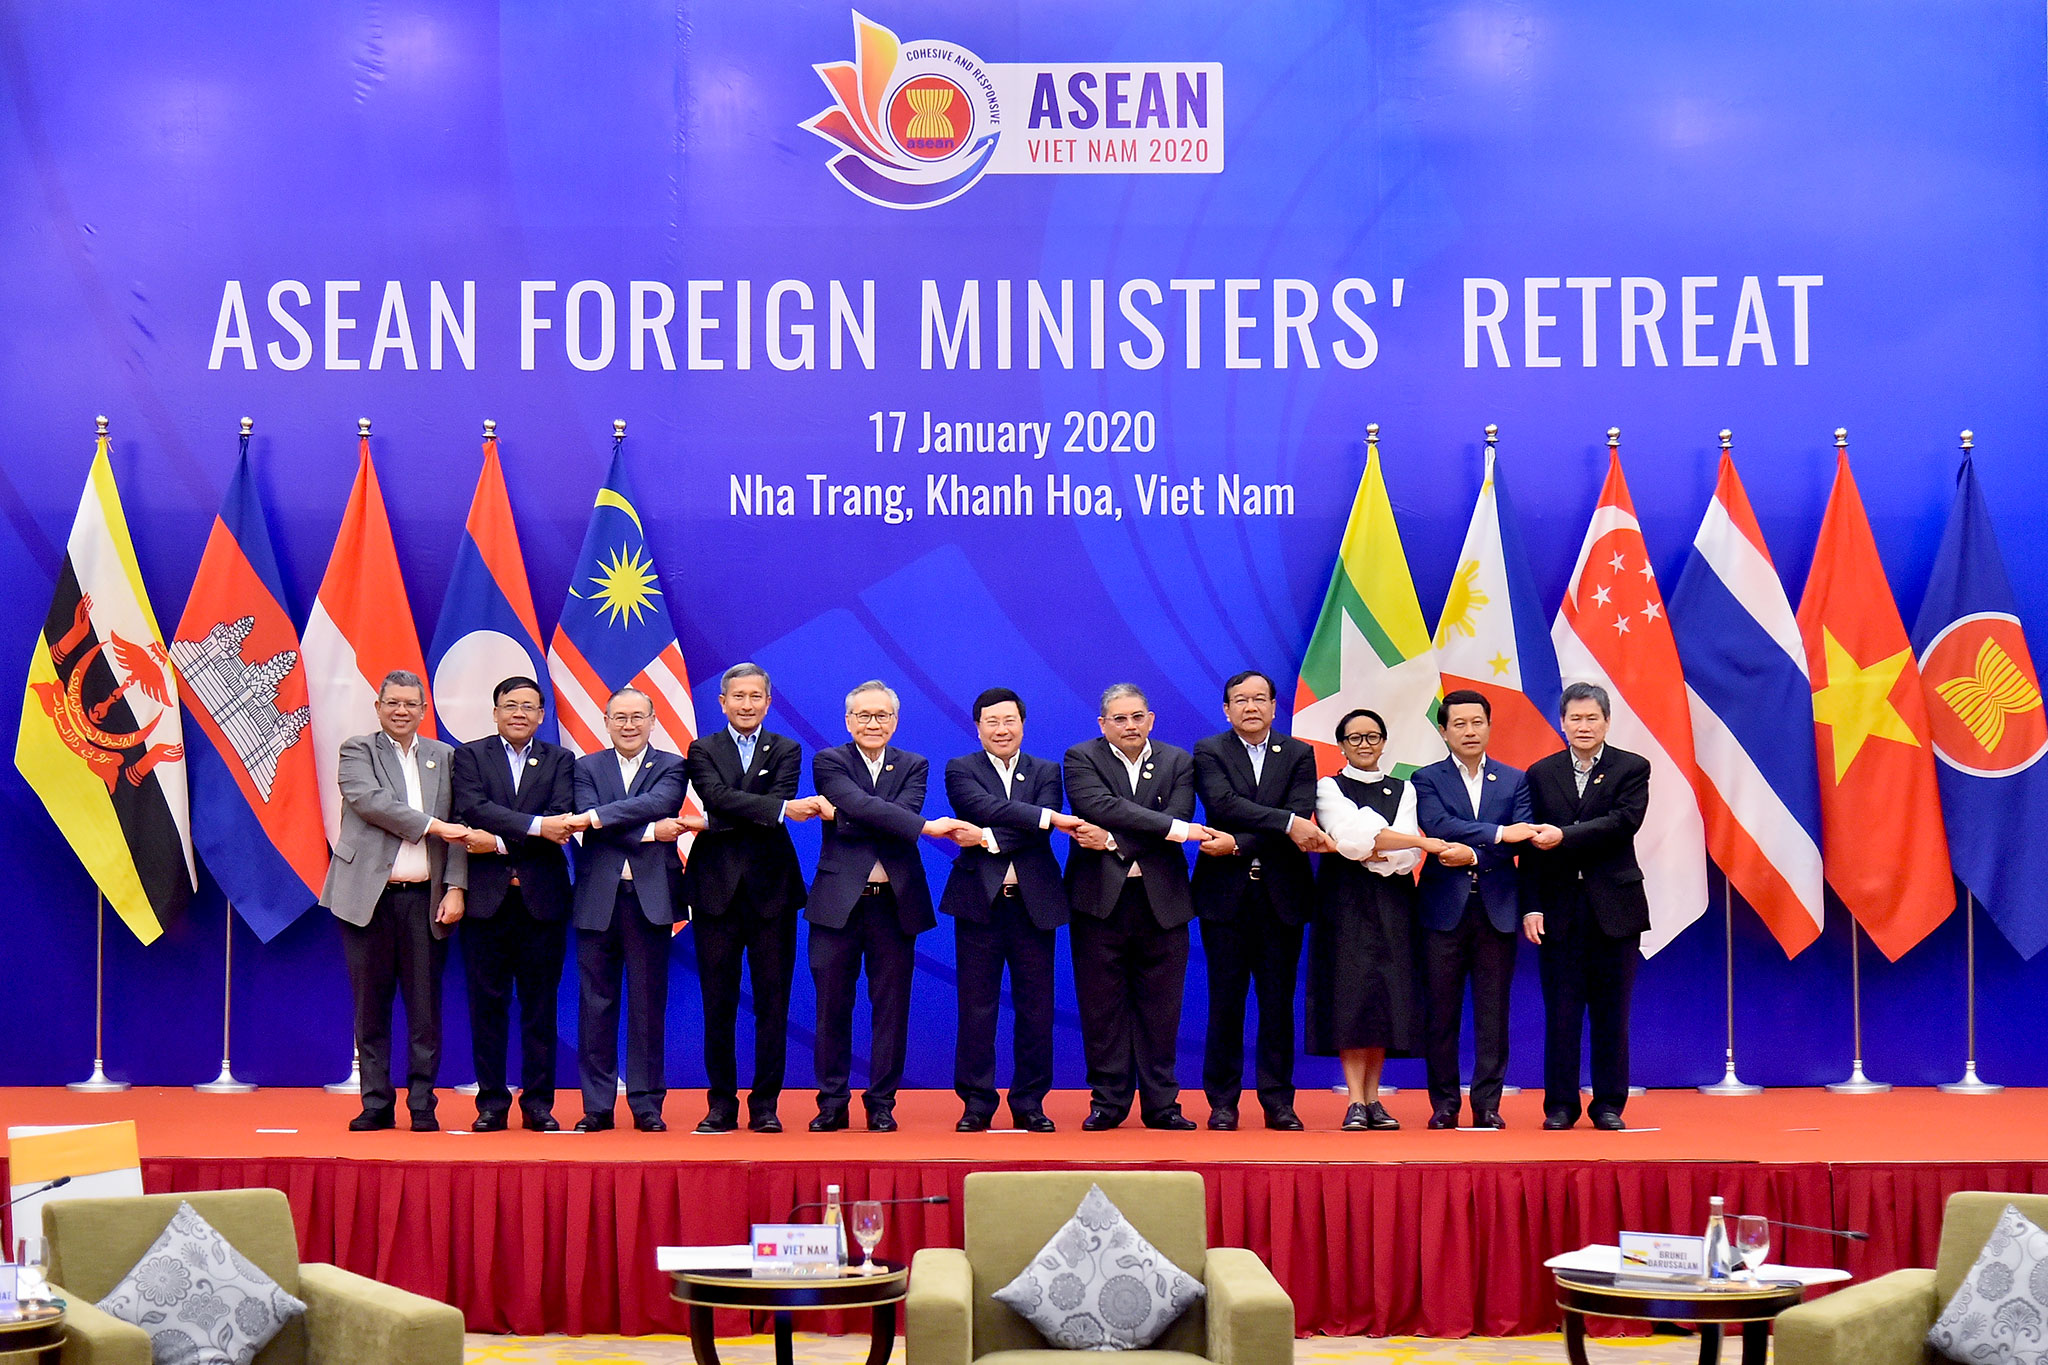 Chuyển phát nhanh khu vực ASEAN chất lượng tốt nhất